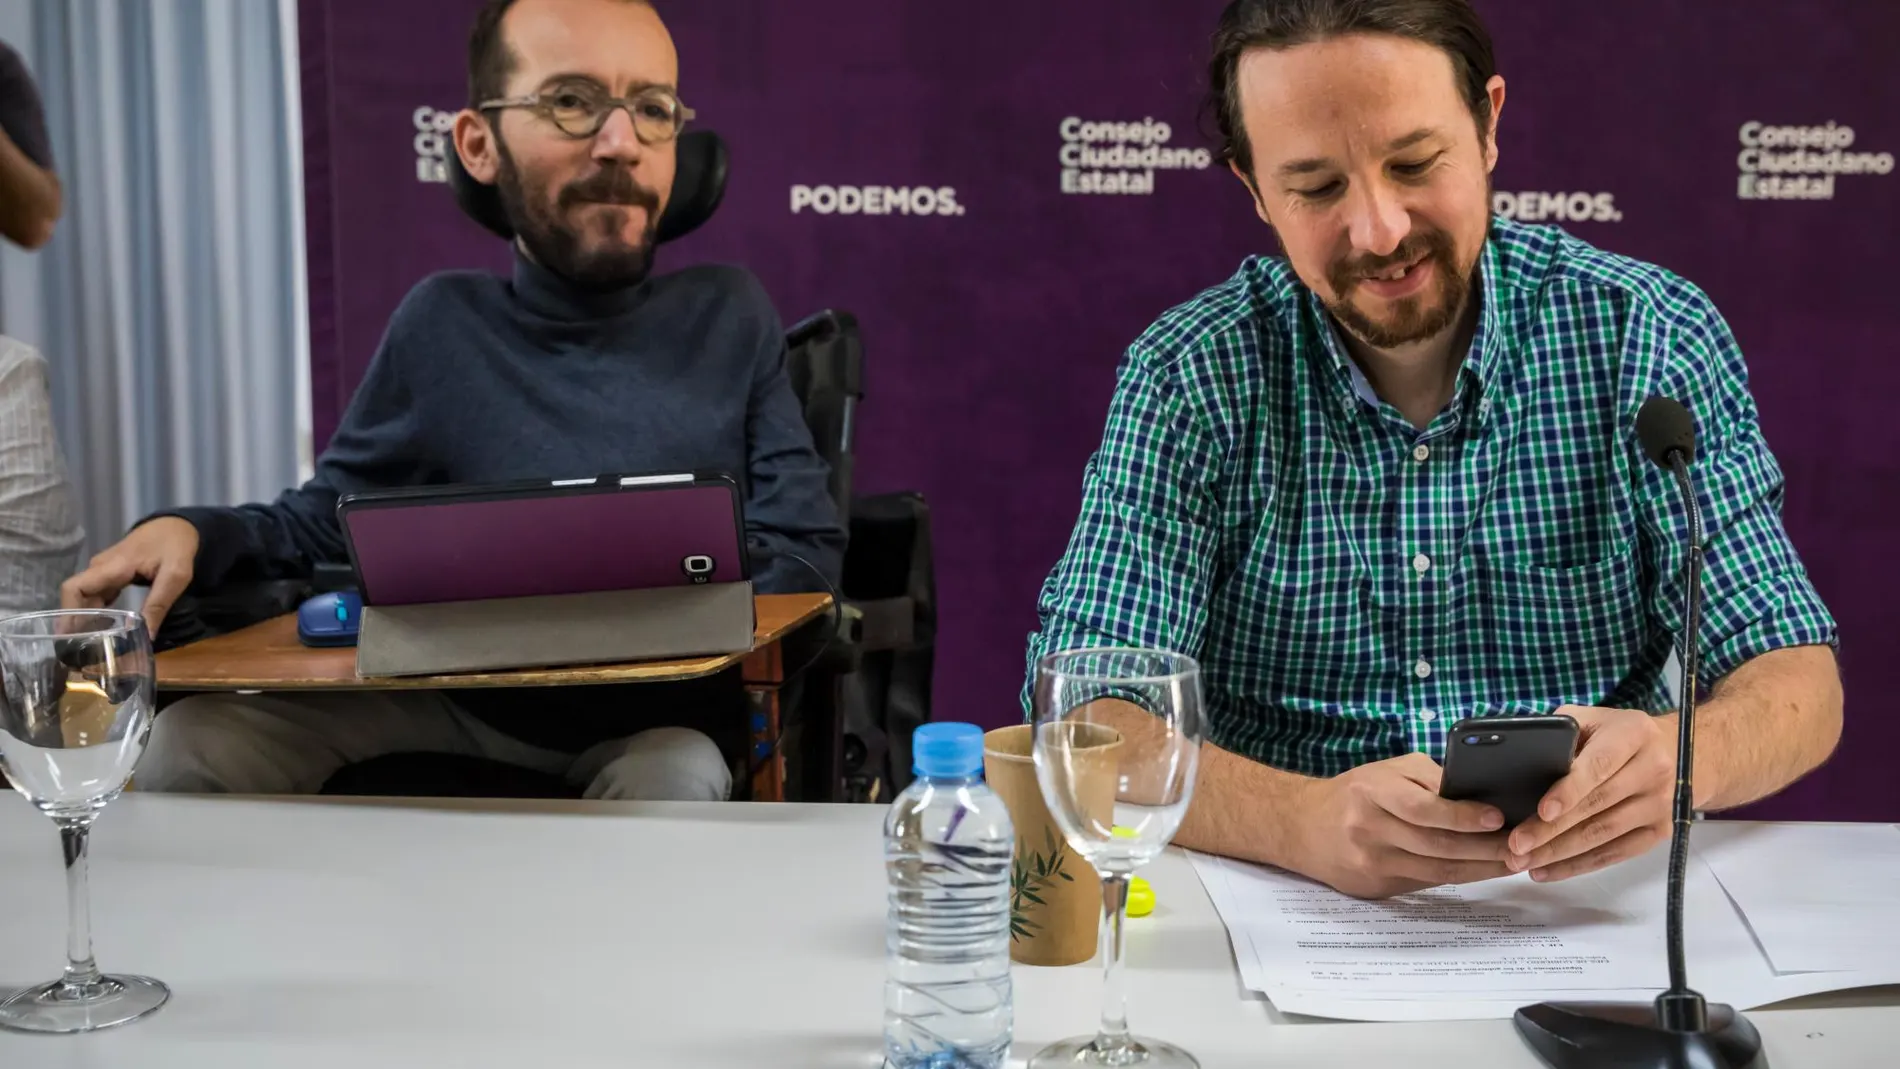 Pablo Echenique y Pablo Iglesias en un Consejo Ciudadano de Podemos